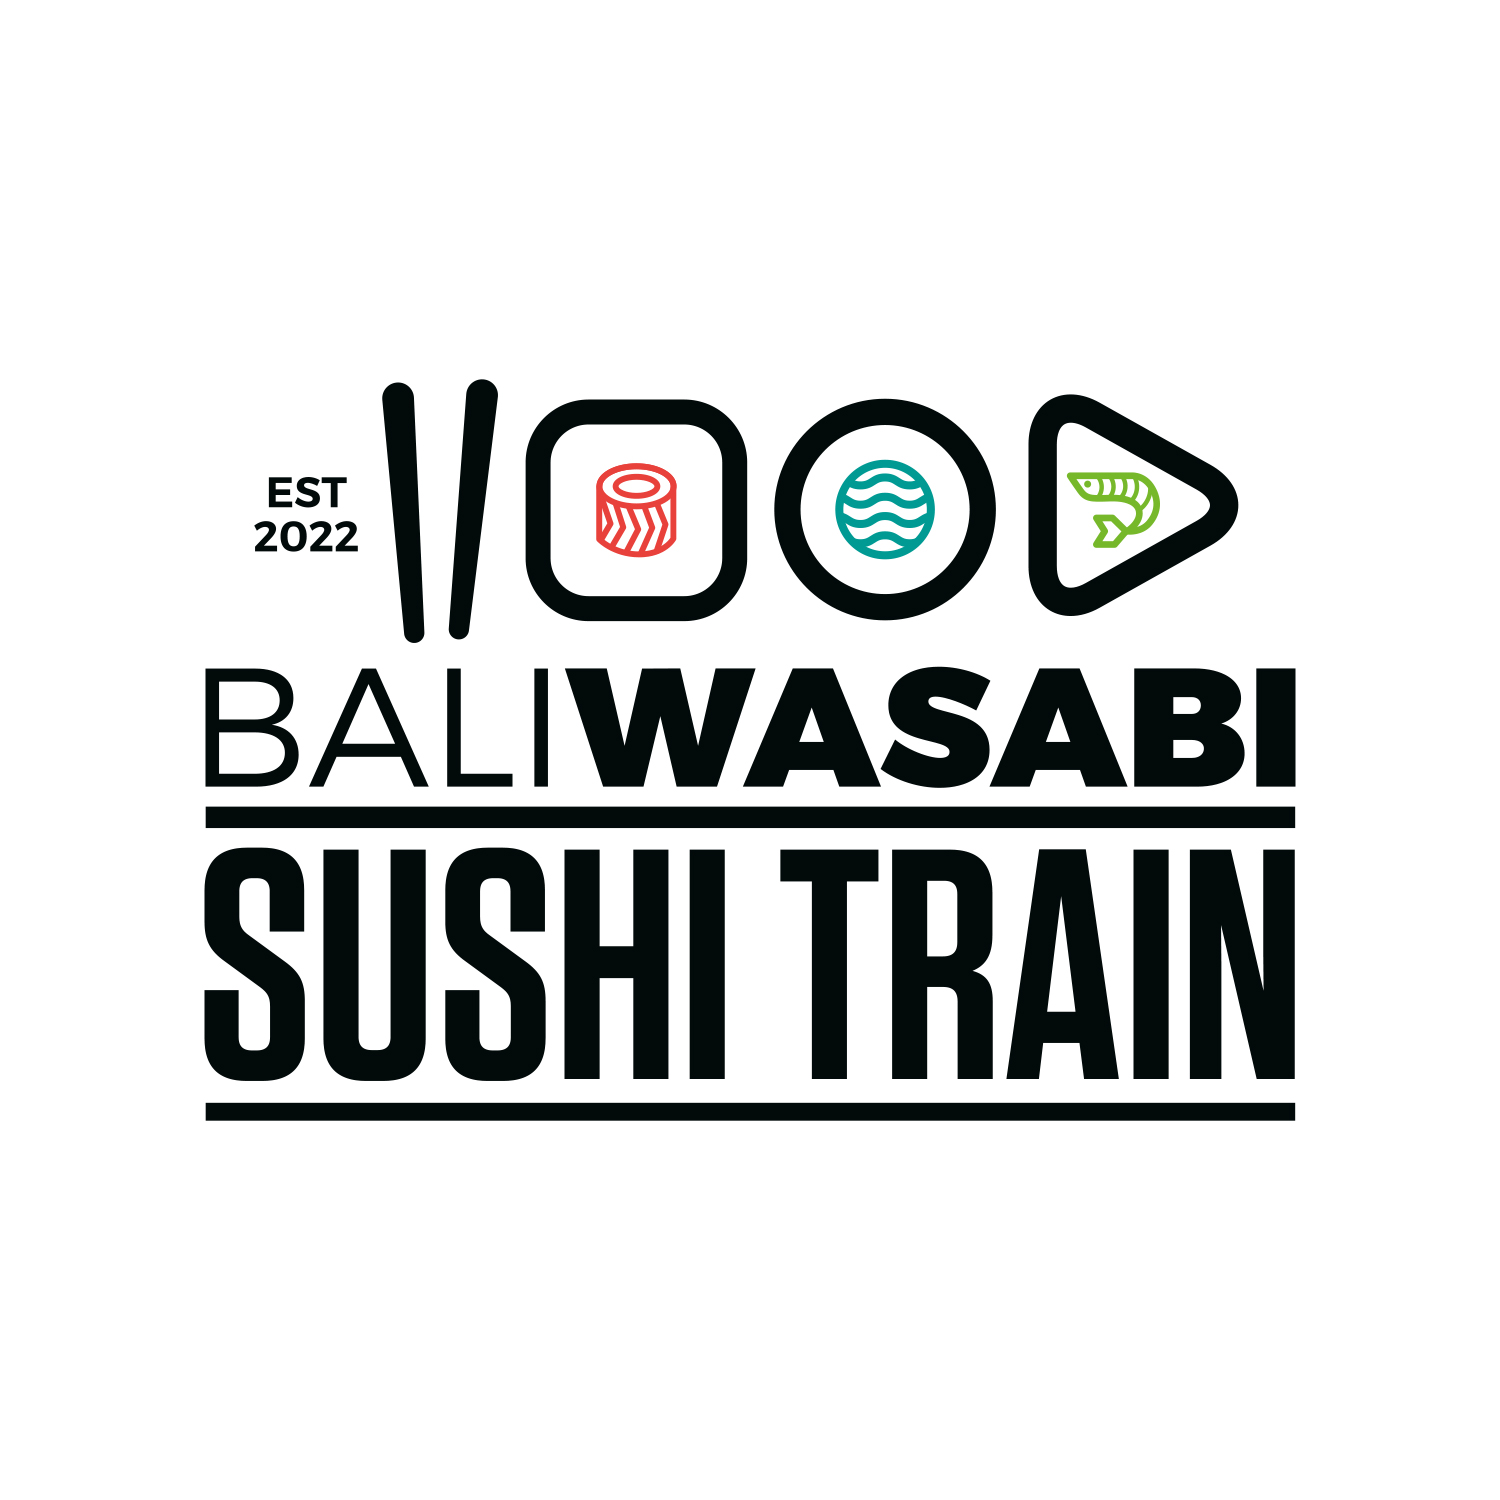 Bali Wasabi Sushi Train